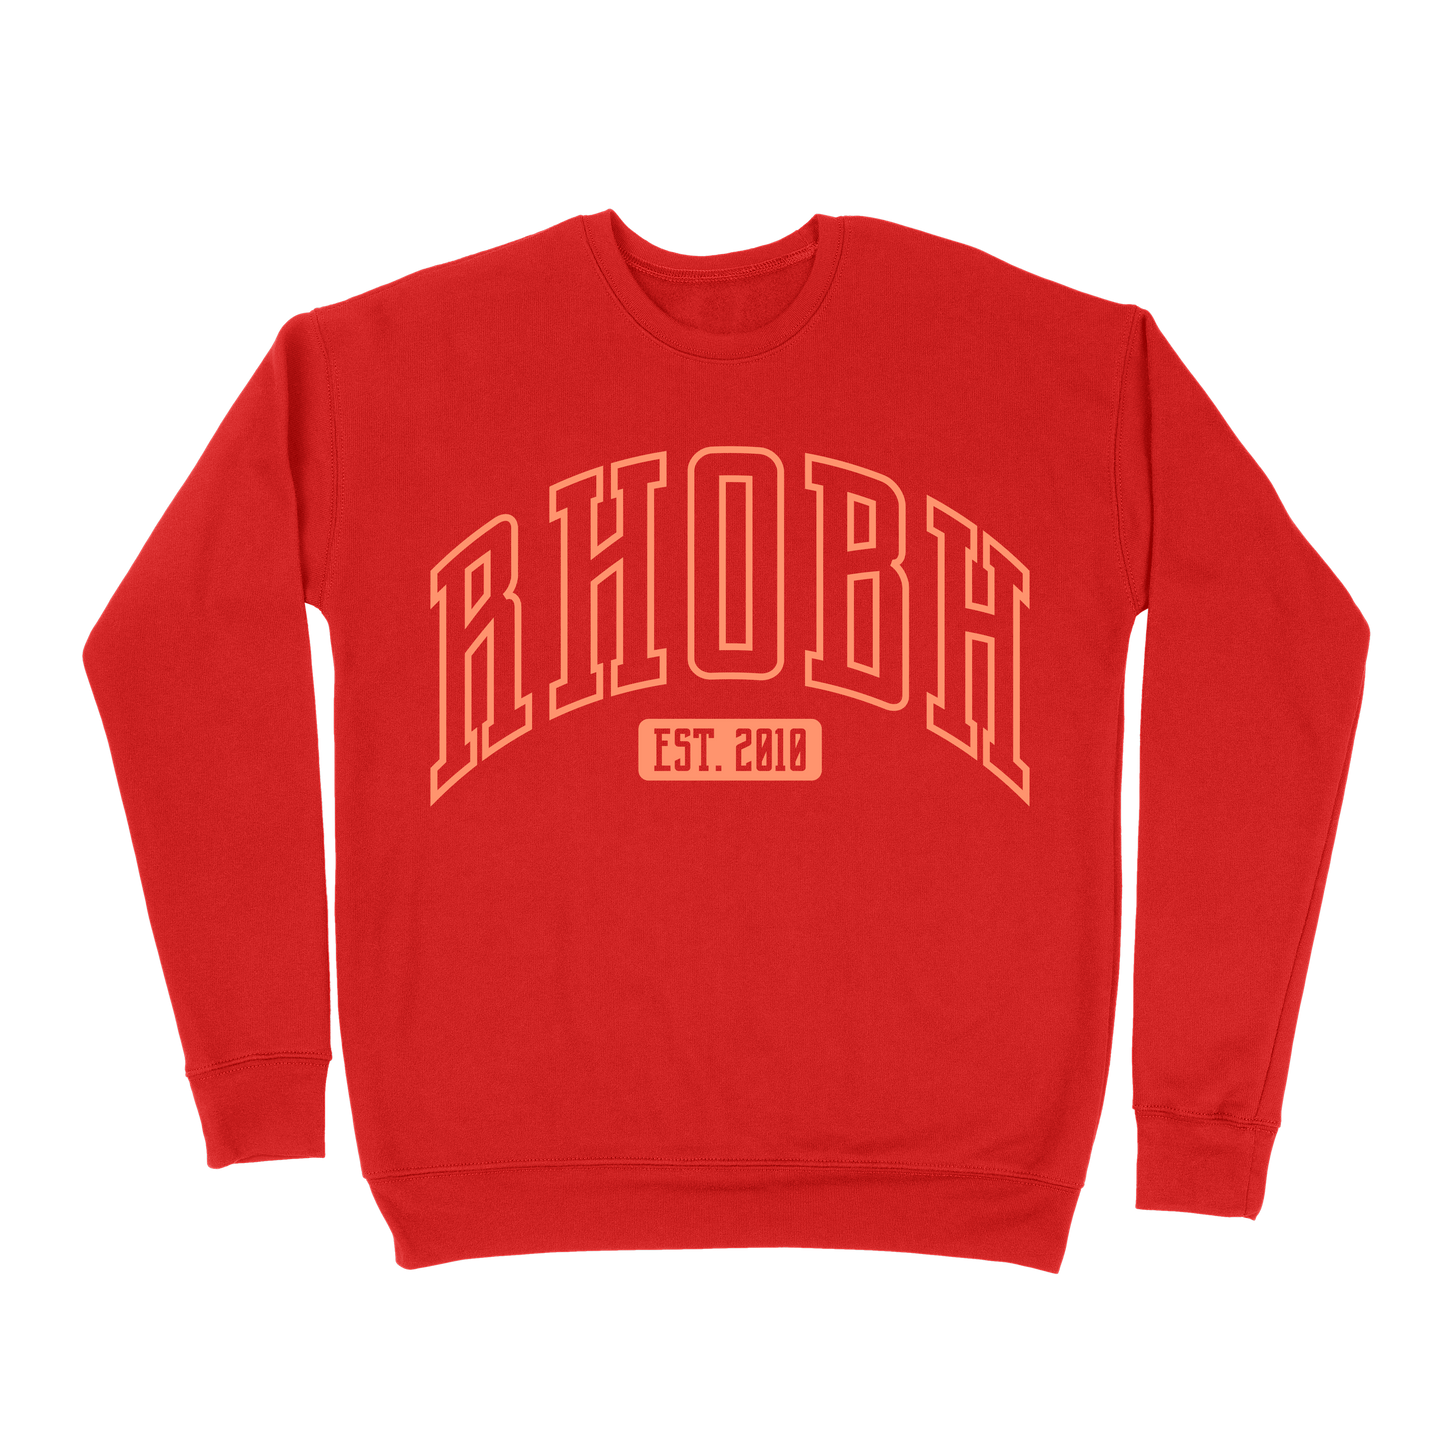 RHOBH EST 2010 Sweatshirt - Red